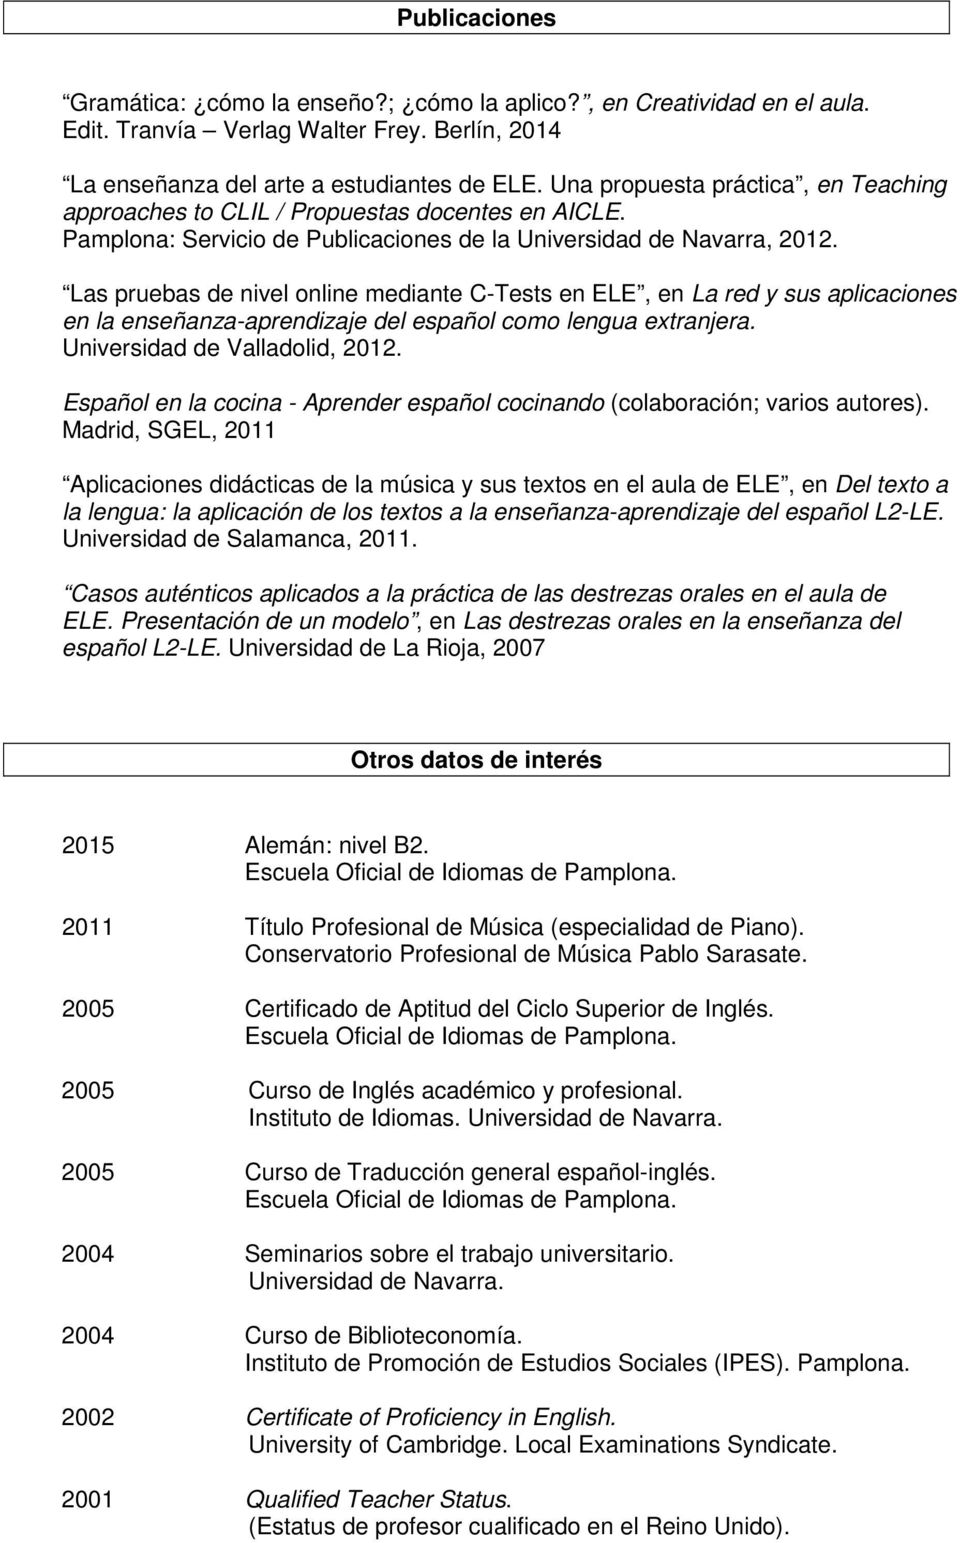 Las pruebas de nivel online mediante C-Tests en ELE, en La red y sus aplicaciones en la enseñanza-aprendizaje del español como lengua extranjera. Universidad de Valladolid, 2012.